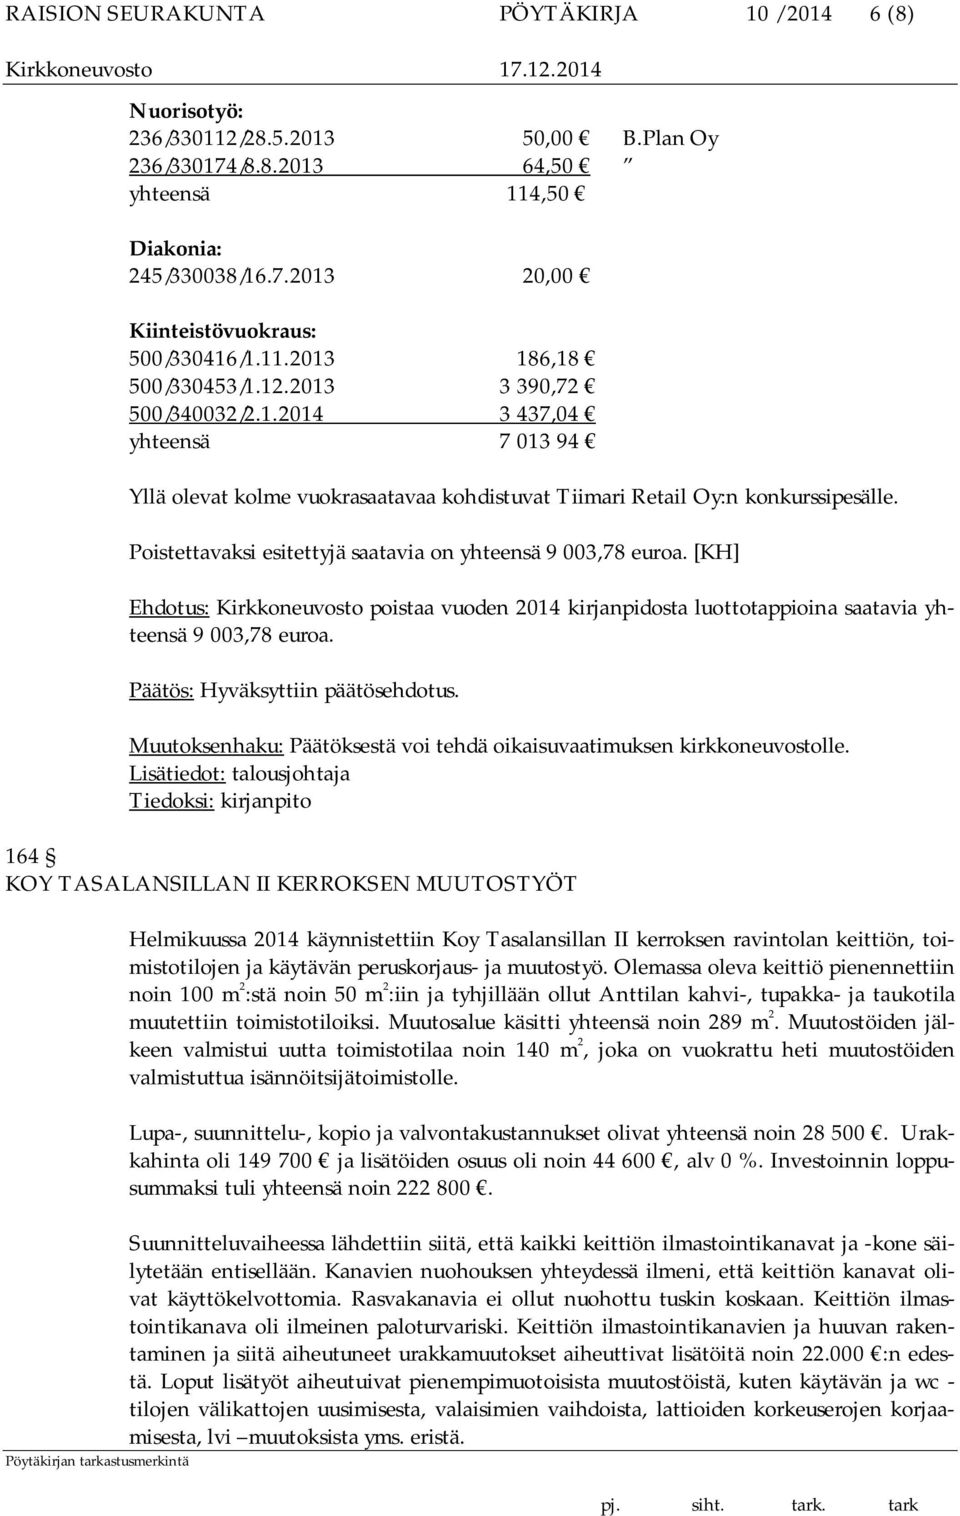 Poistettavaksi esitettyjä saatavia on yhteensä 9 003,78 euroa. [KH] Ehdotus: Kirkkoneuvosto poistaa vuoden 2014 kirjanpidosta luottotappioina saatavia yhteensä 9 003,78 euroa.